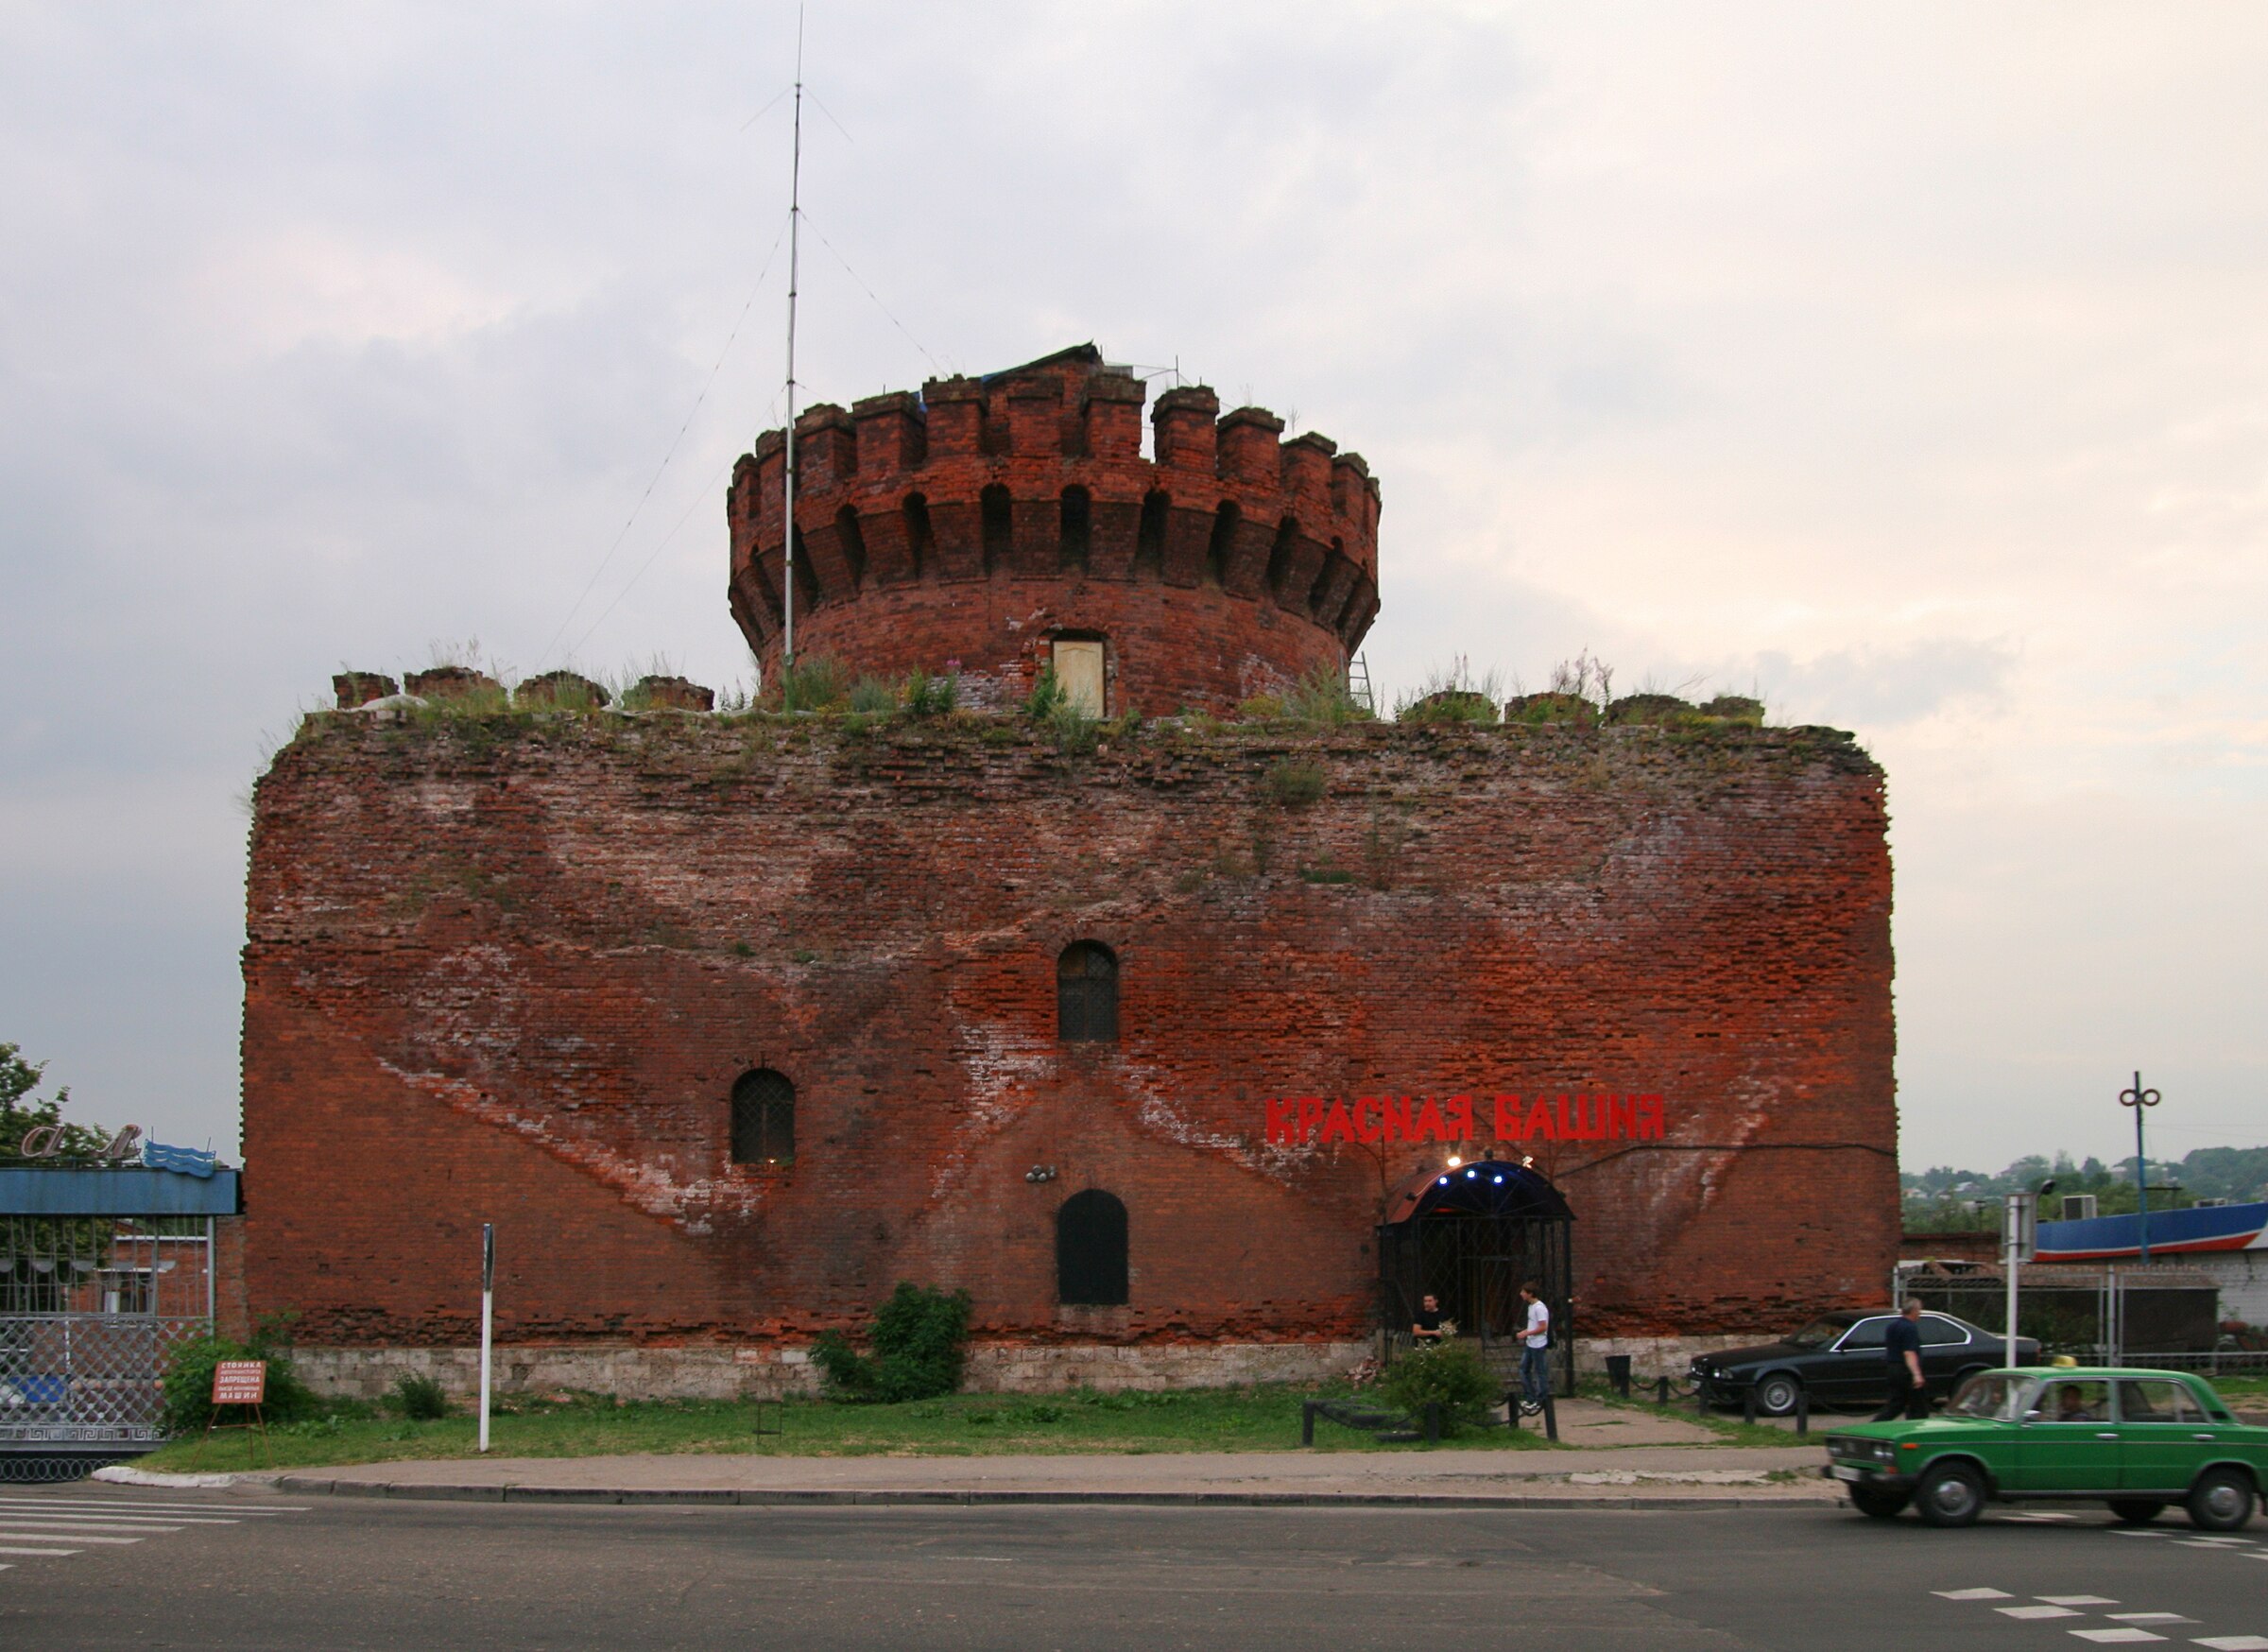 Красная крепость